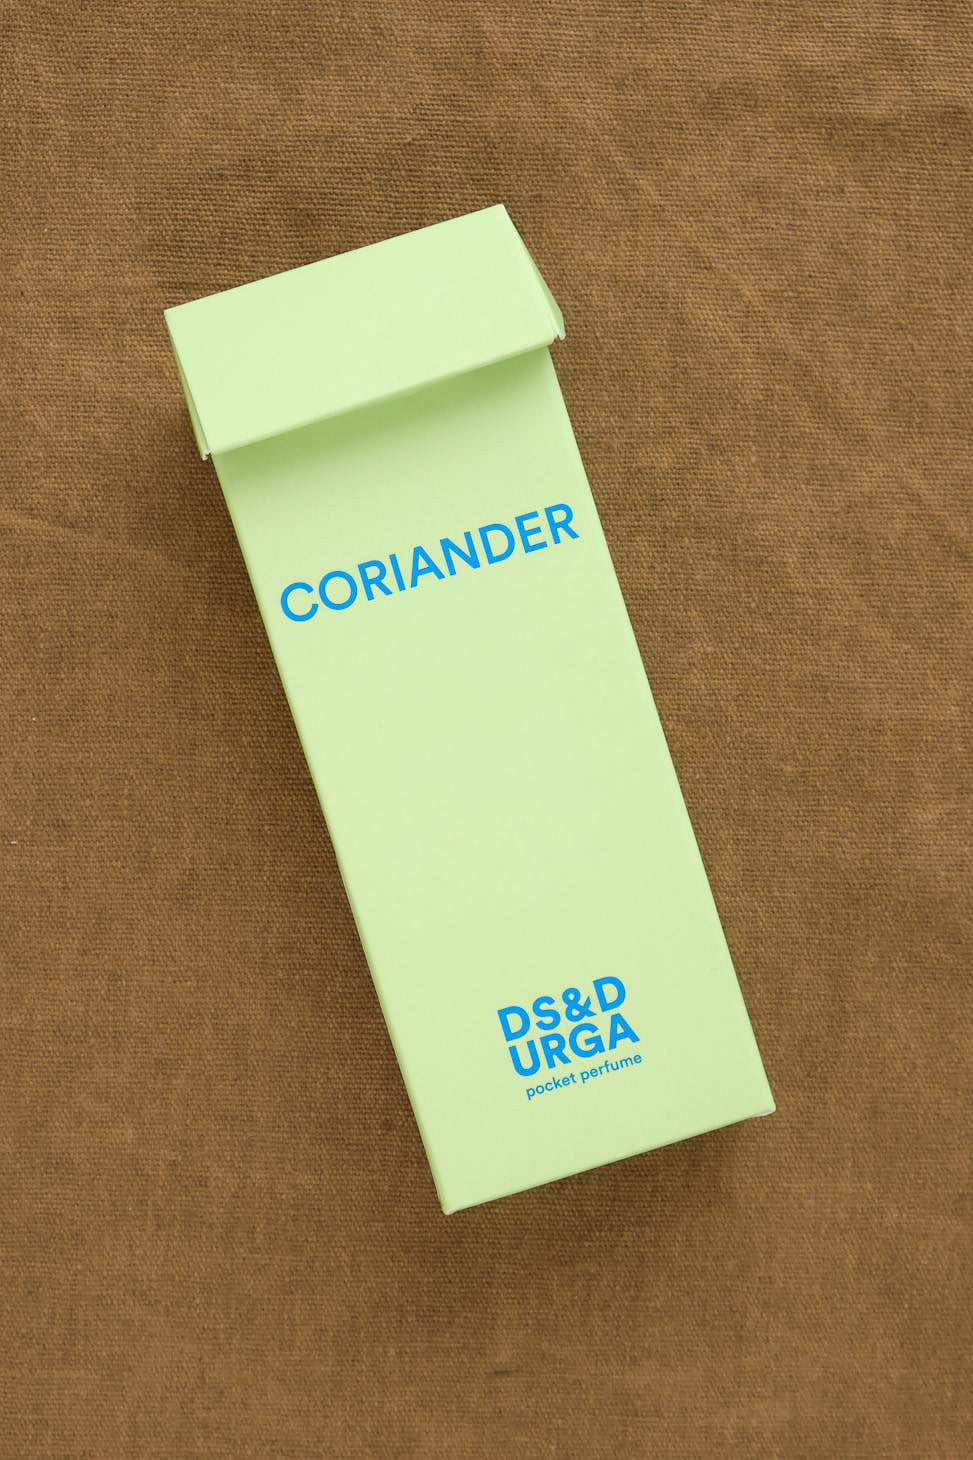 Coriander Pocket Perfume box